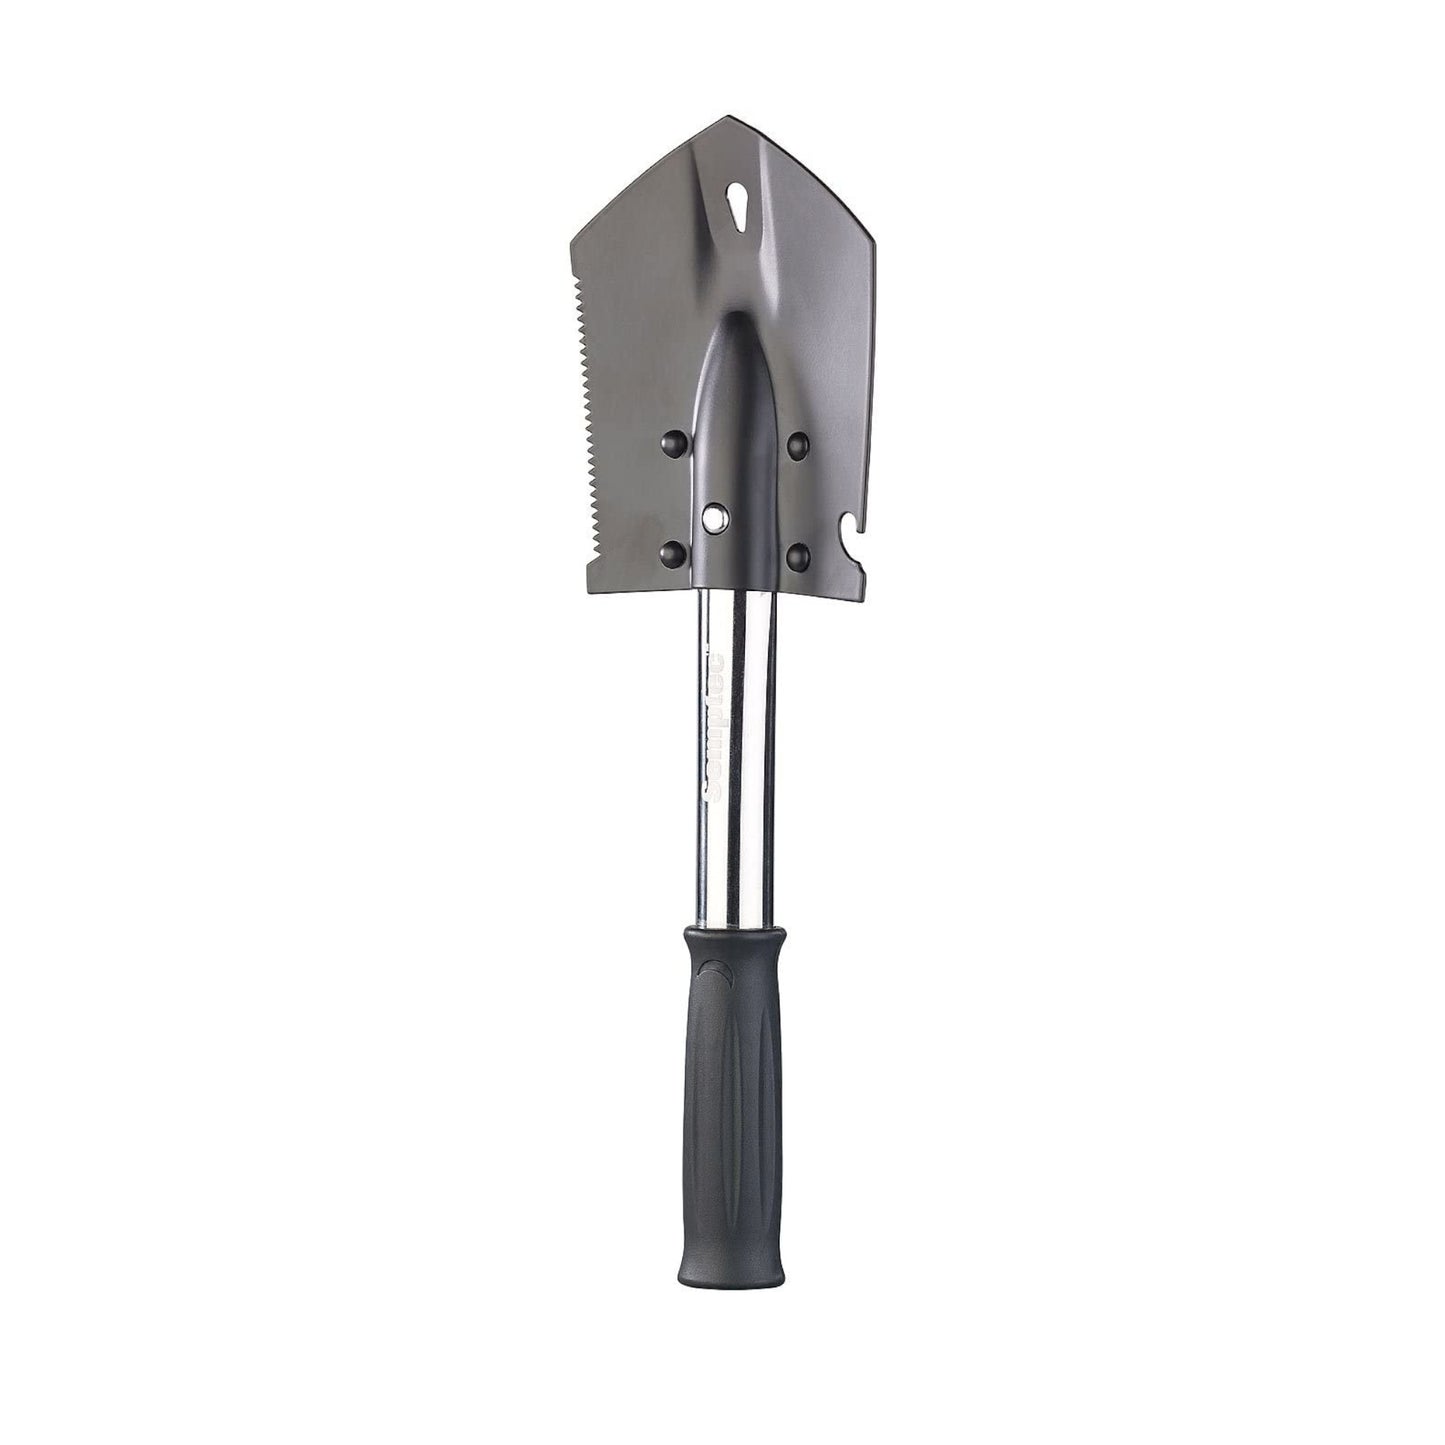 Herramienta múltiple 6-1 Axe: pala de acero al carbono, sierra, cuchillo, abrebotellas, extractor de clavos